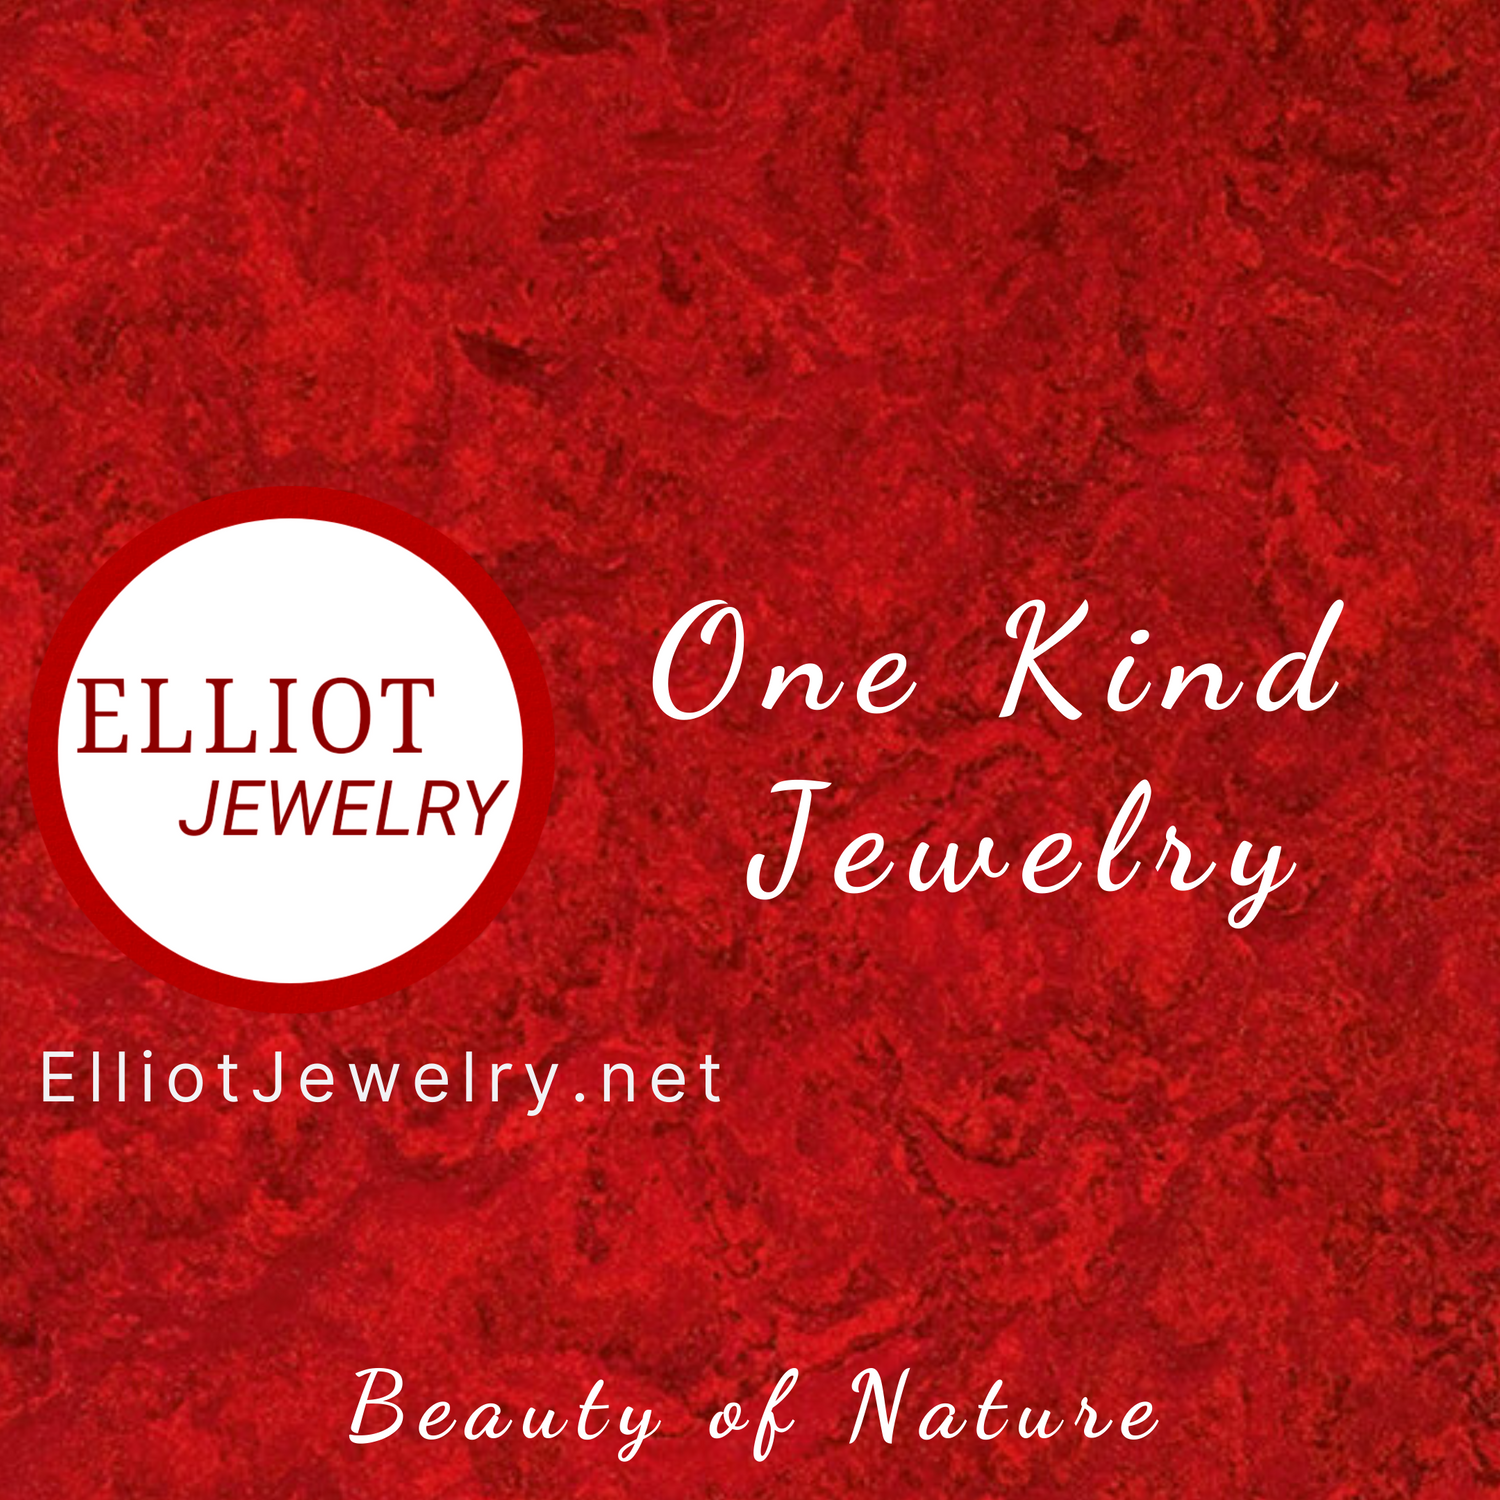 One Kind Jewelry | Elliot Jewelry